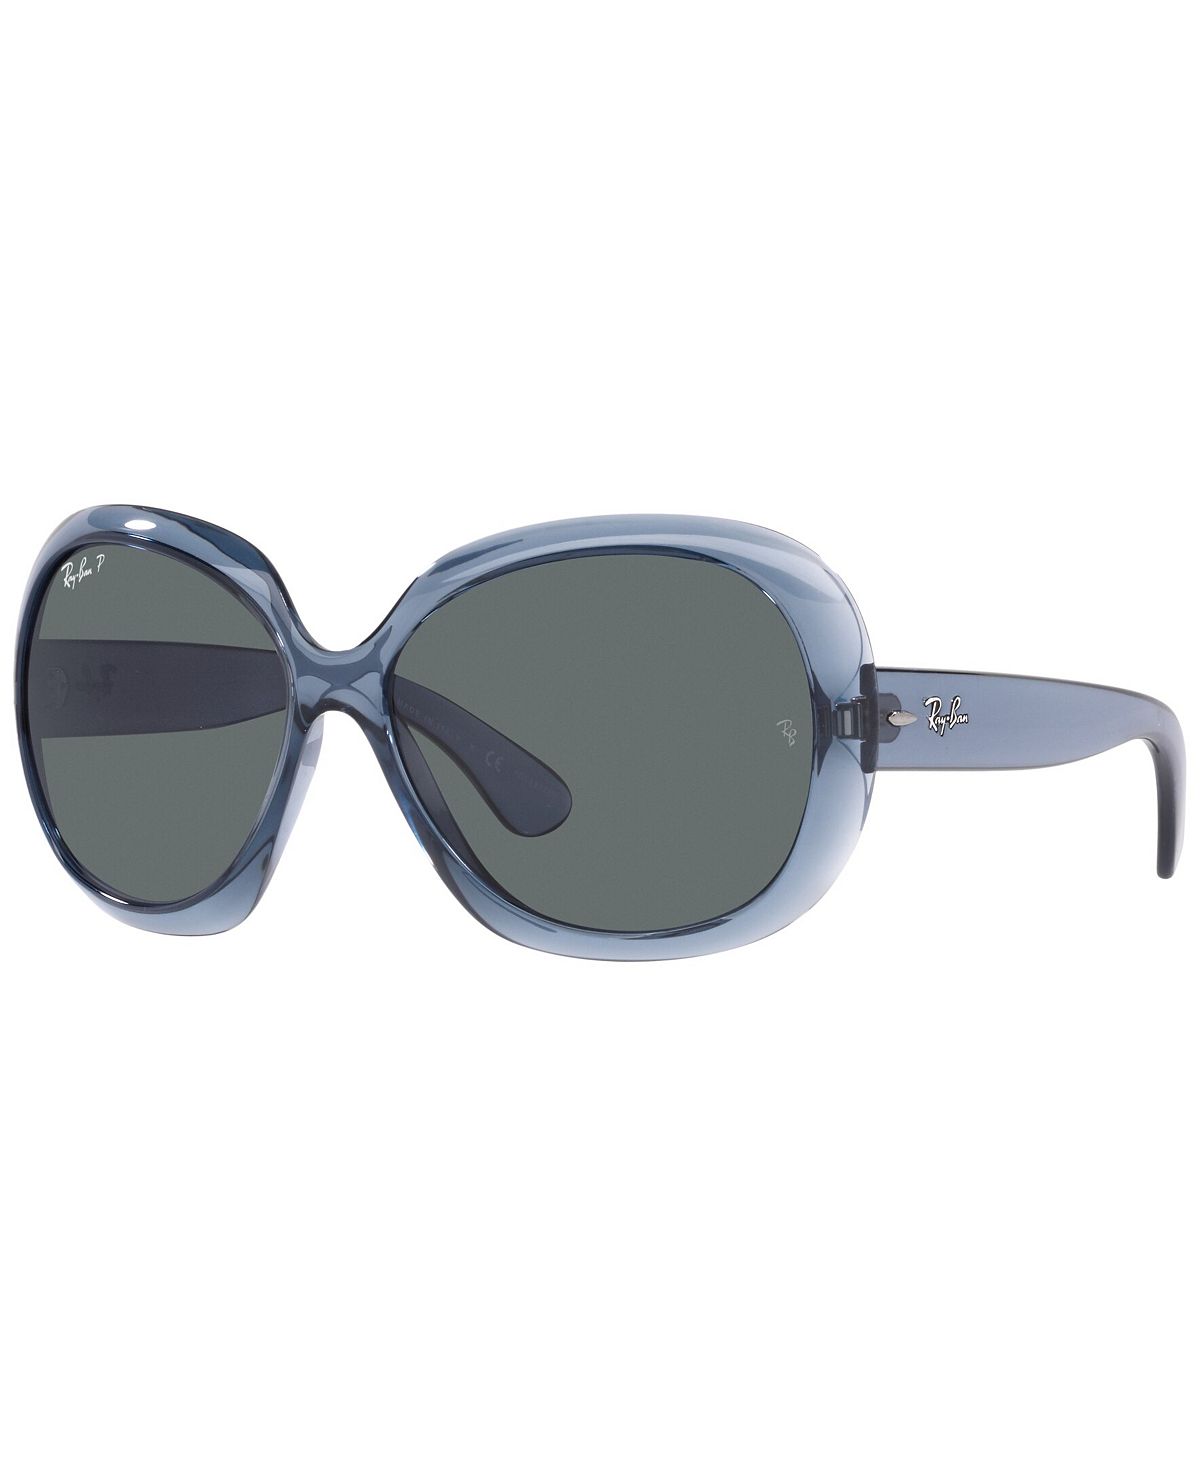 Женские поляризованные солнцезащитные очки, RB4098 JACKIE OHH II 60 Ray-Ban